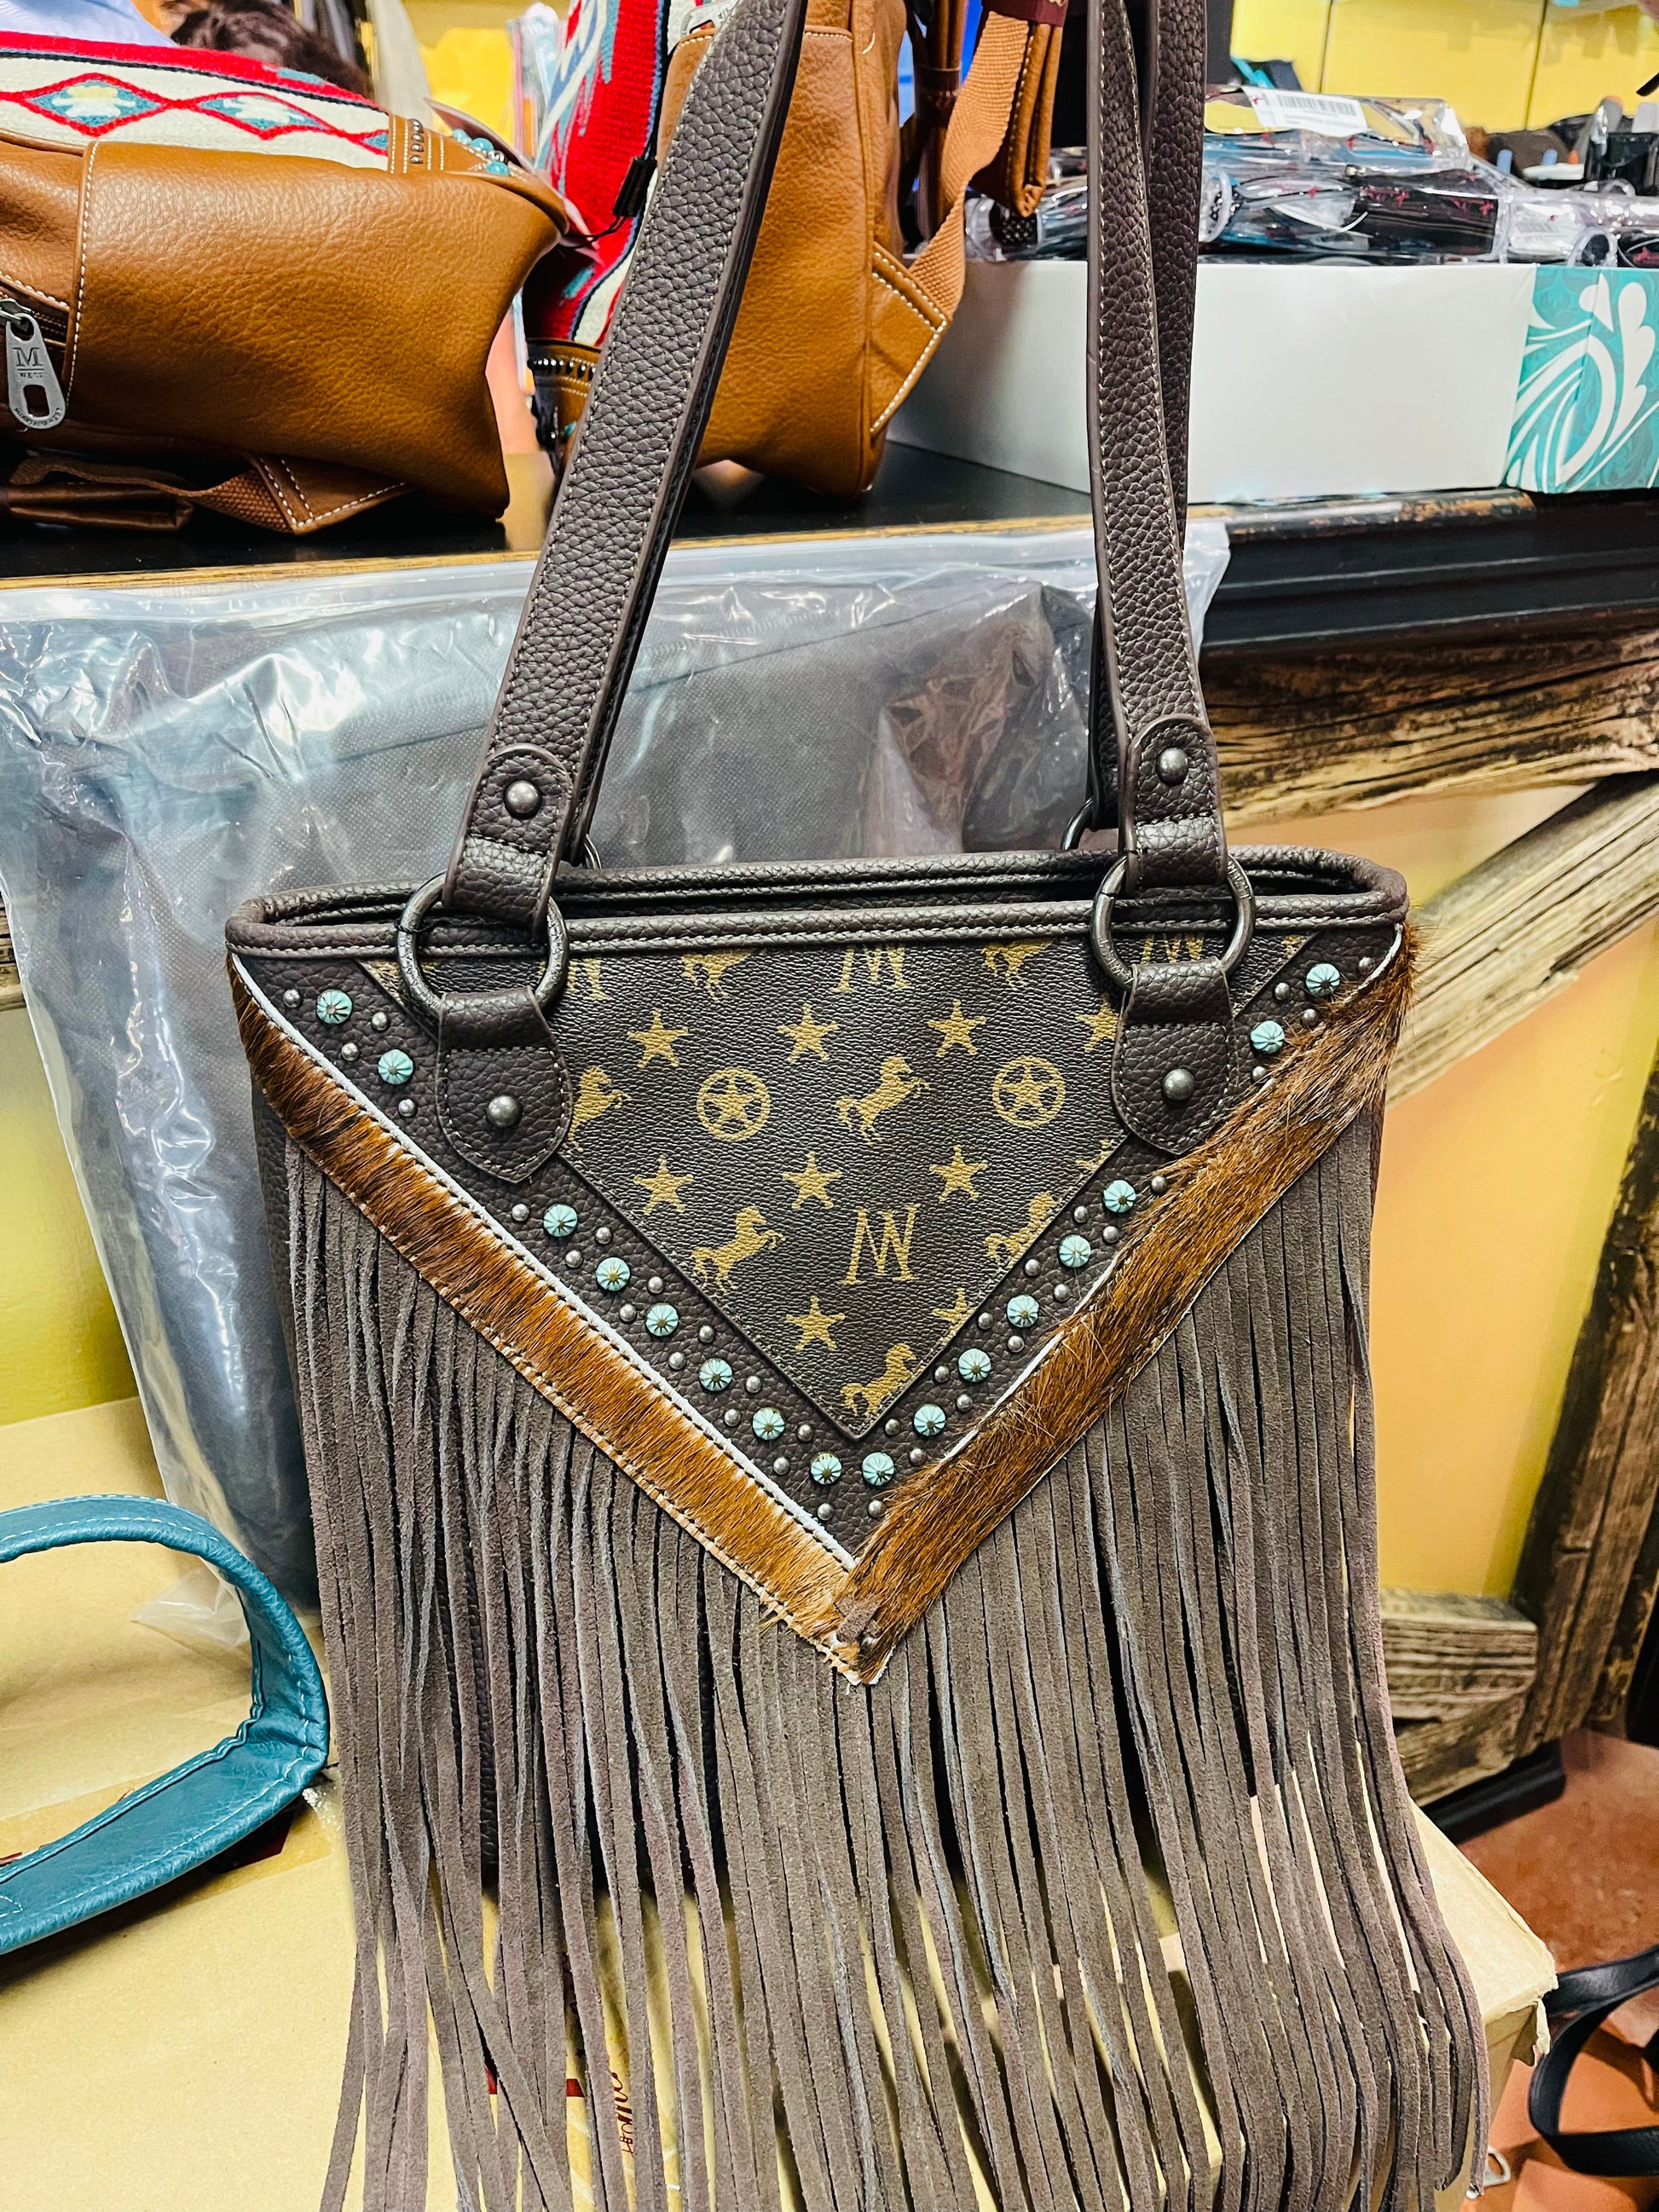 lv western purse